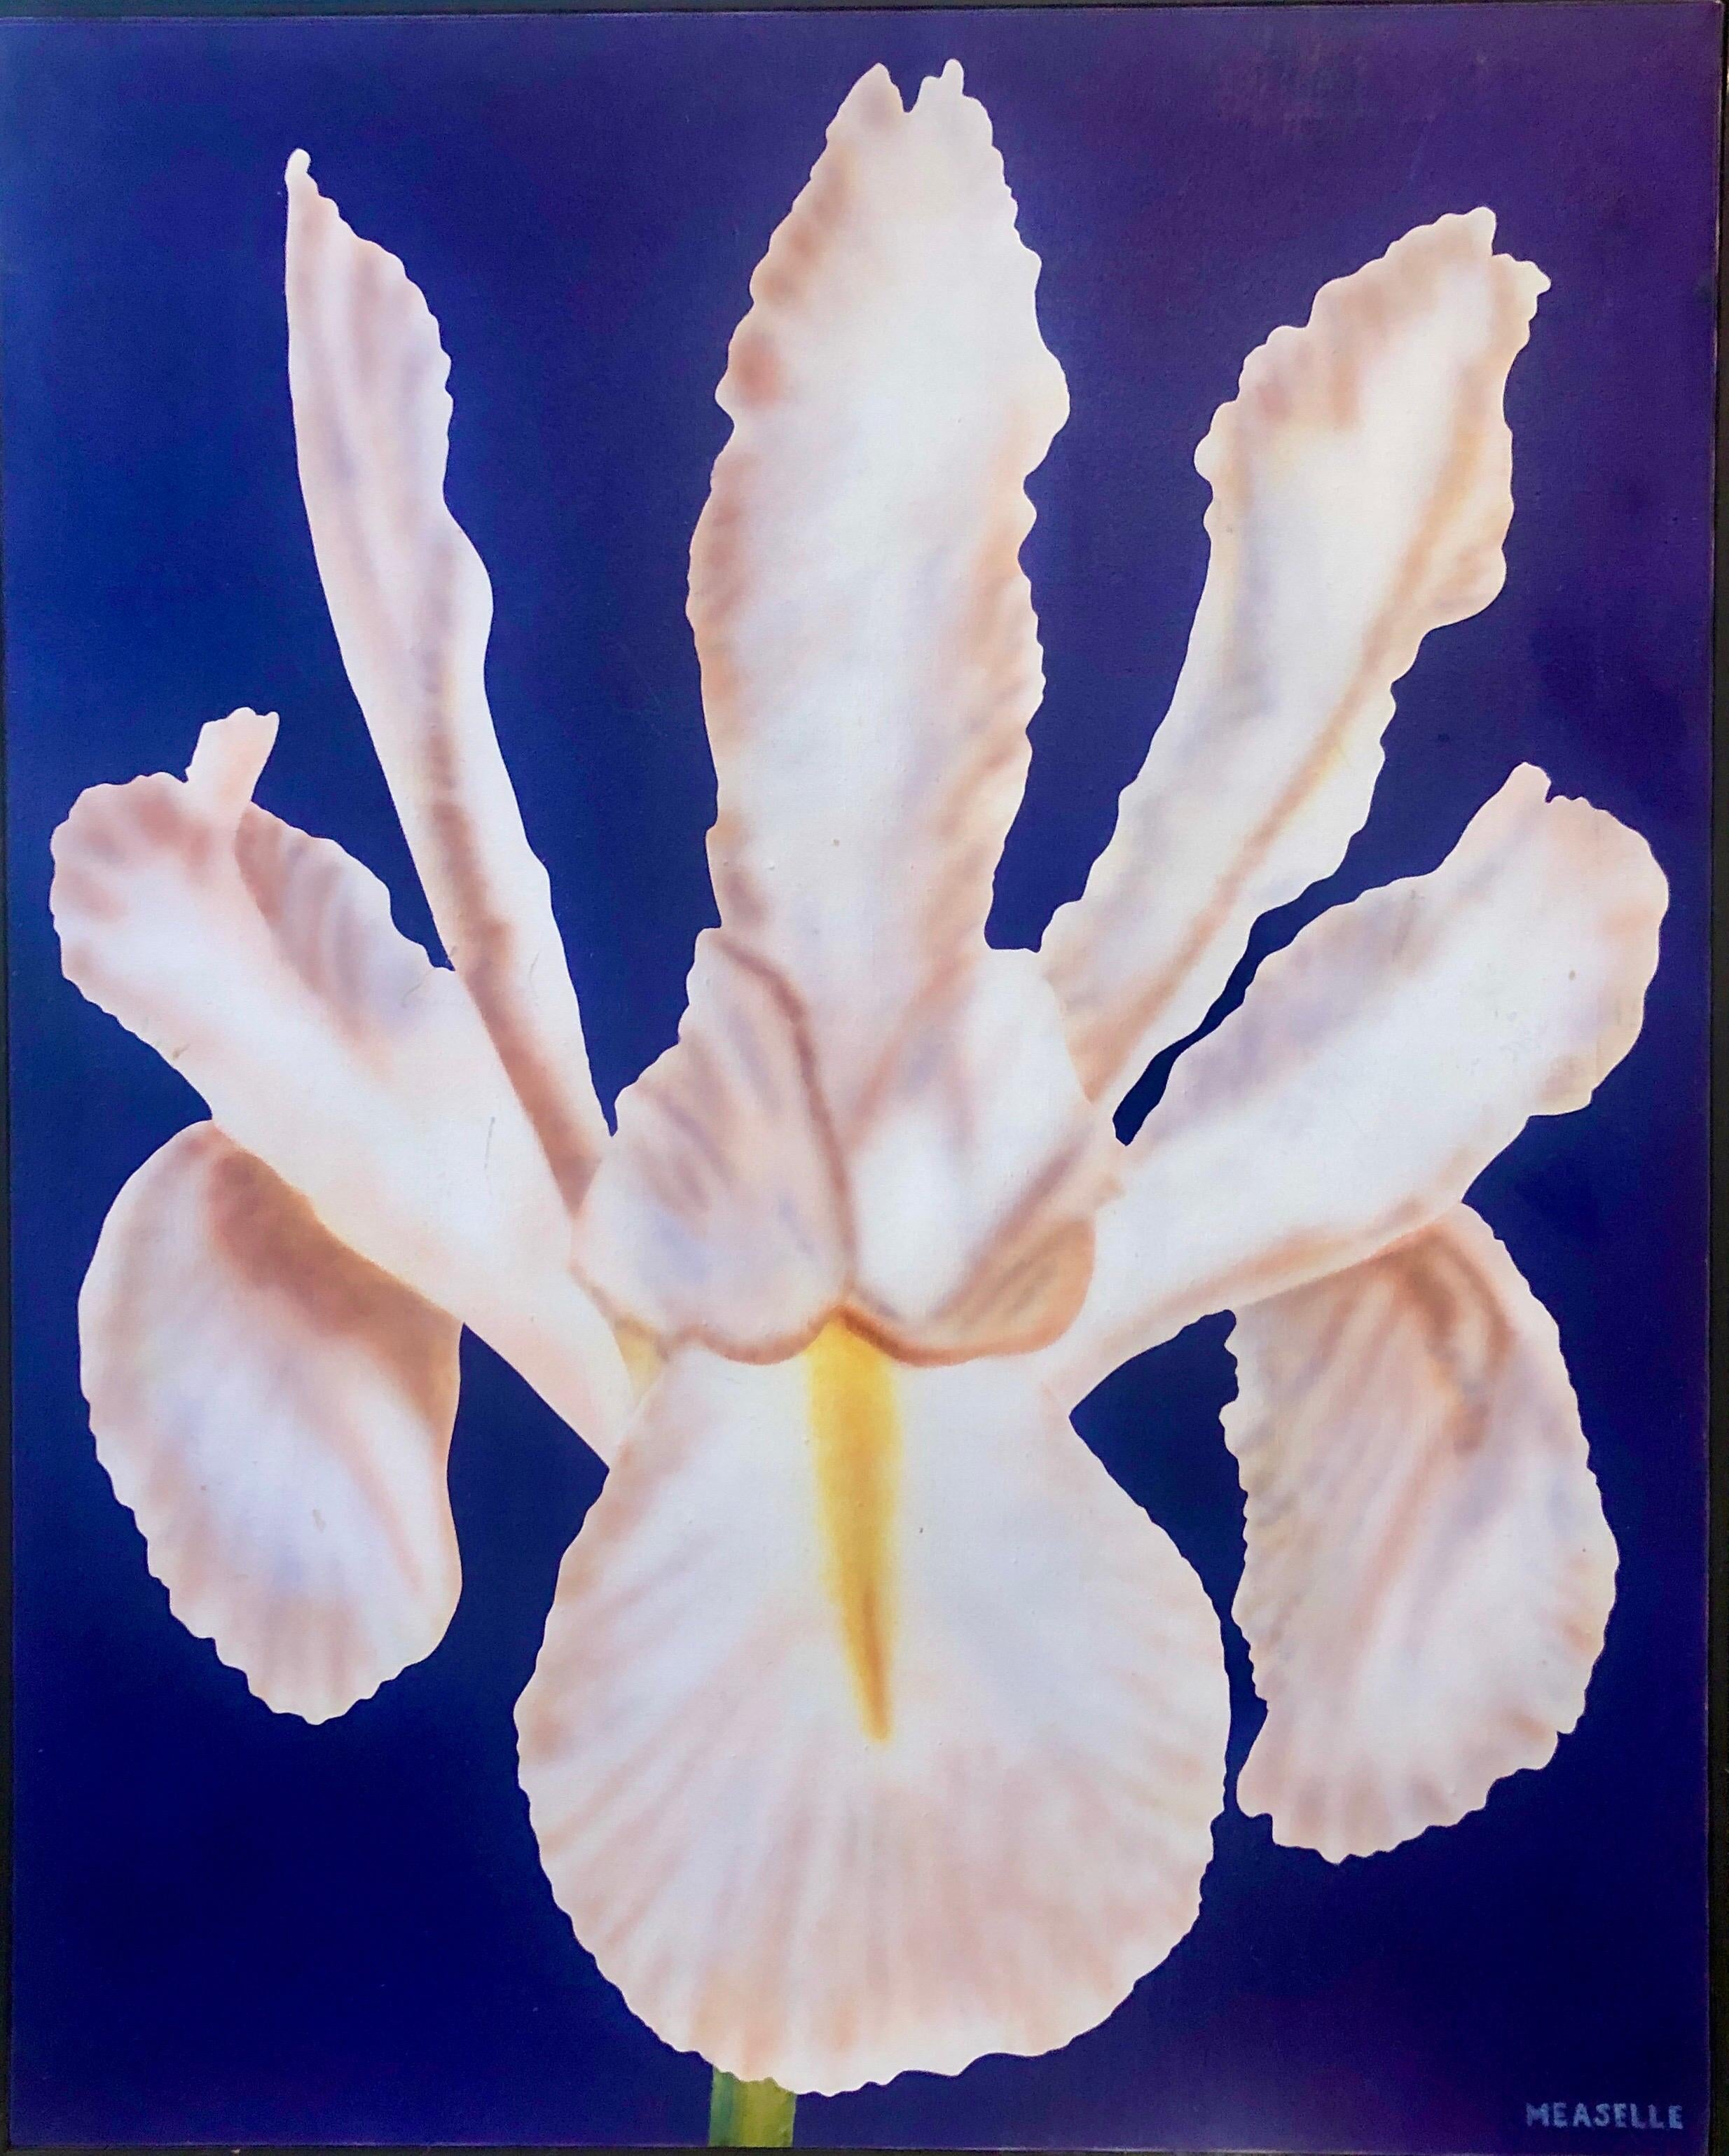 Photoréalisme - Nature morte - Peinture acrylique - Fleur - Photoréaliste - Orchidée, bleu vif